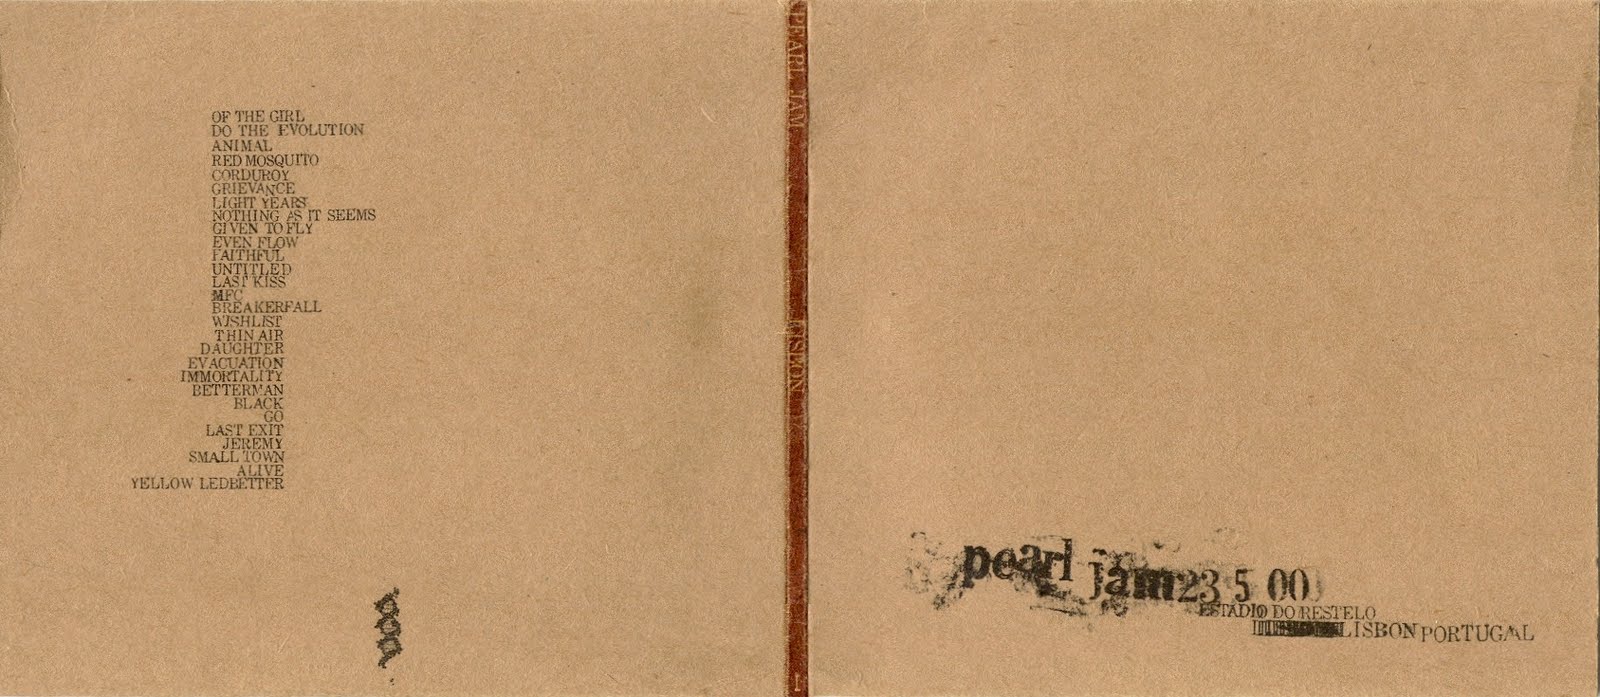 pearl jam bootlegs colombus 2000